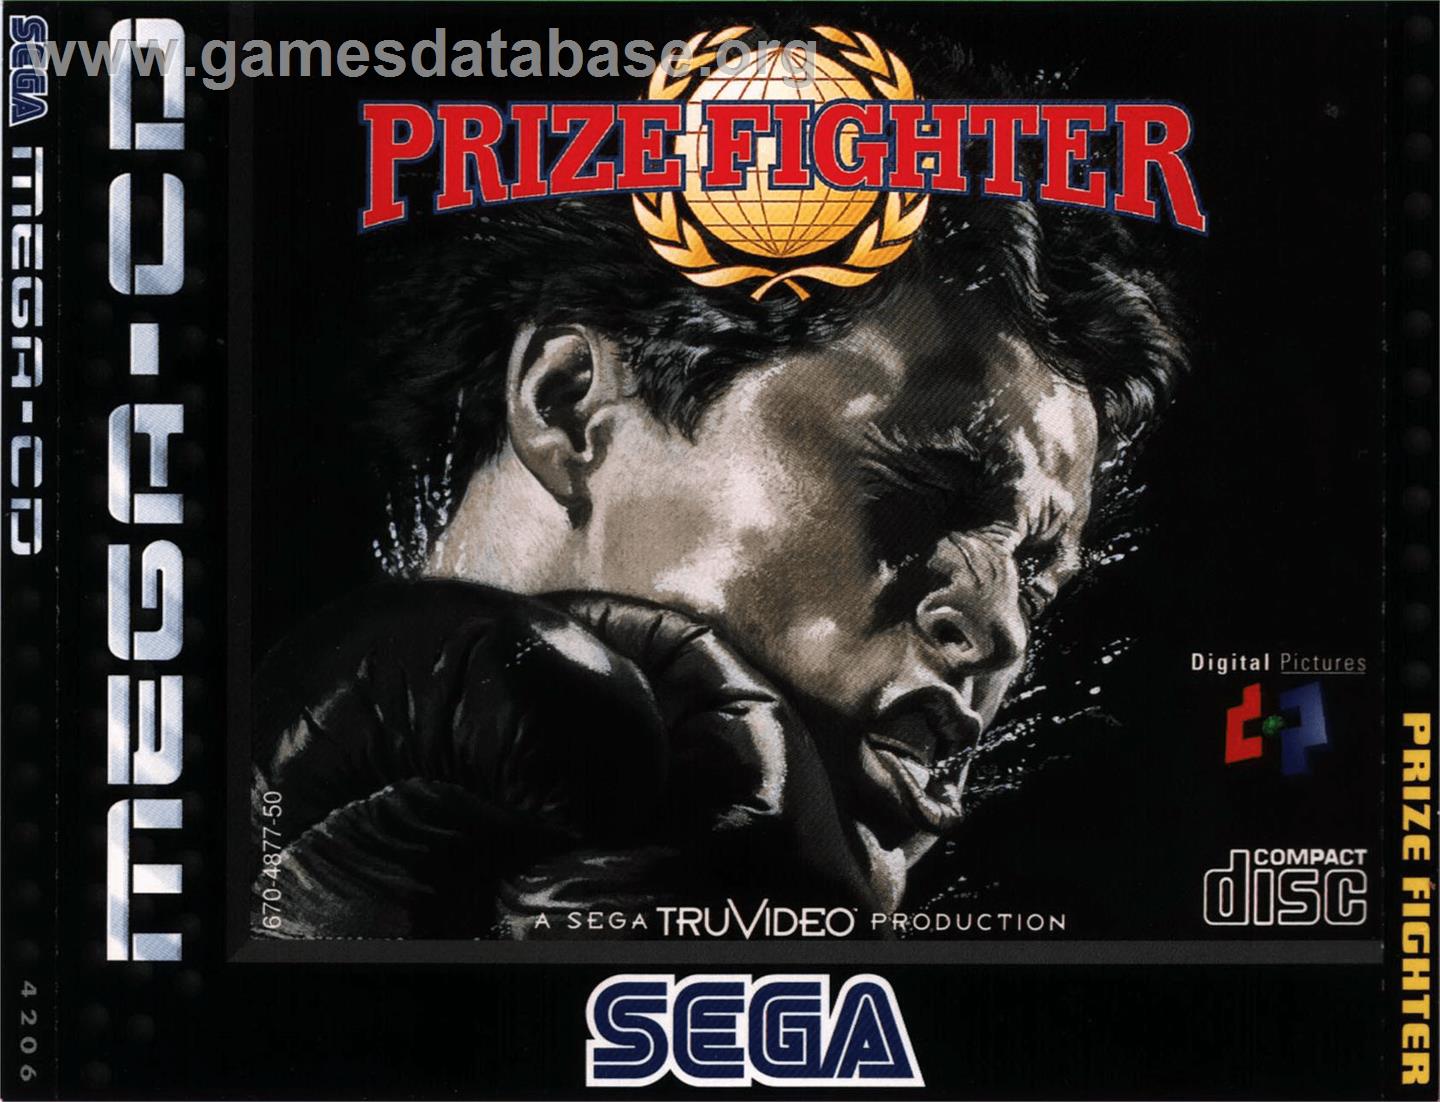 Prize Fighter - Sega CD - Artwork - Box